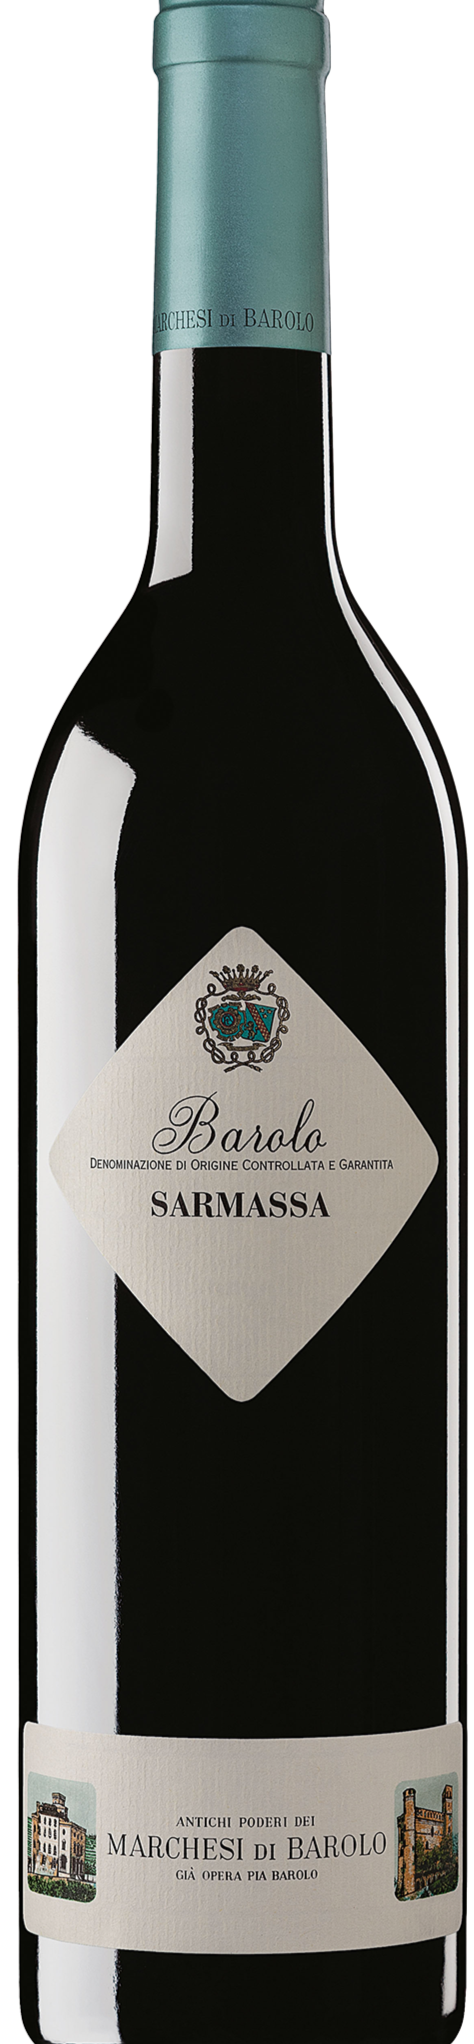 Marchesi di Barolo Sarmassa DOCG - Premium Red Wine from Marchesi Di Barolo - Shop now at Whiskery